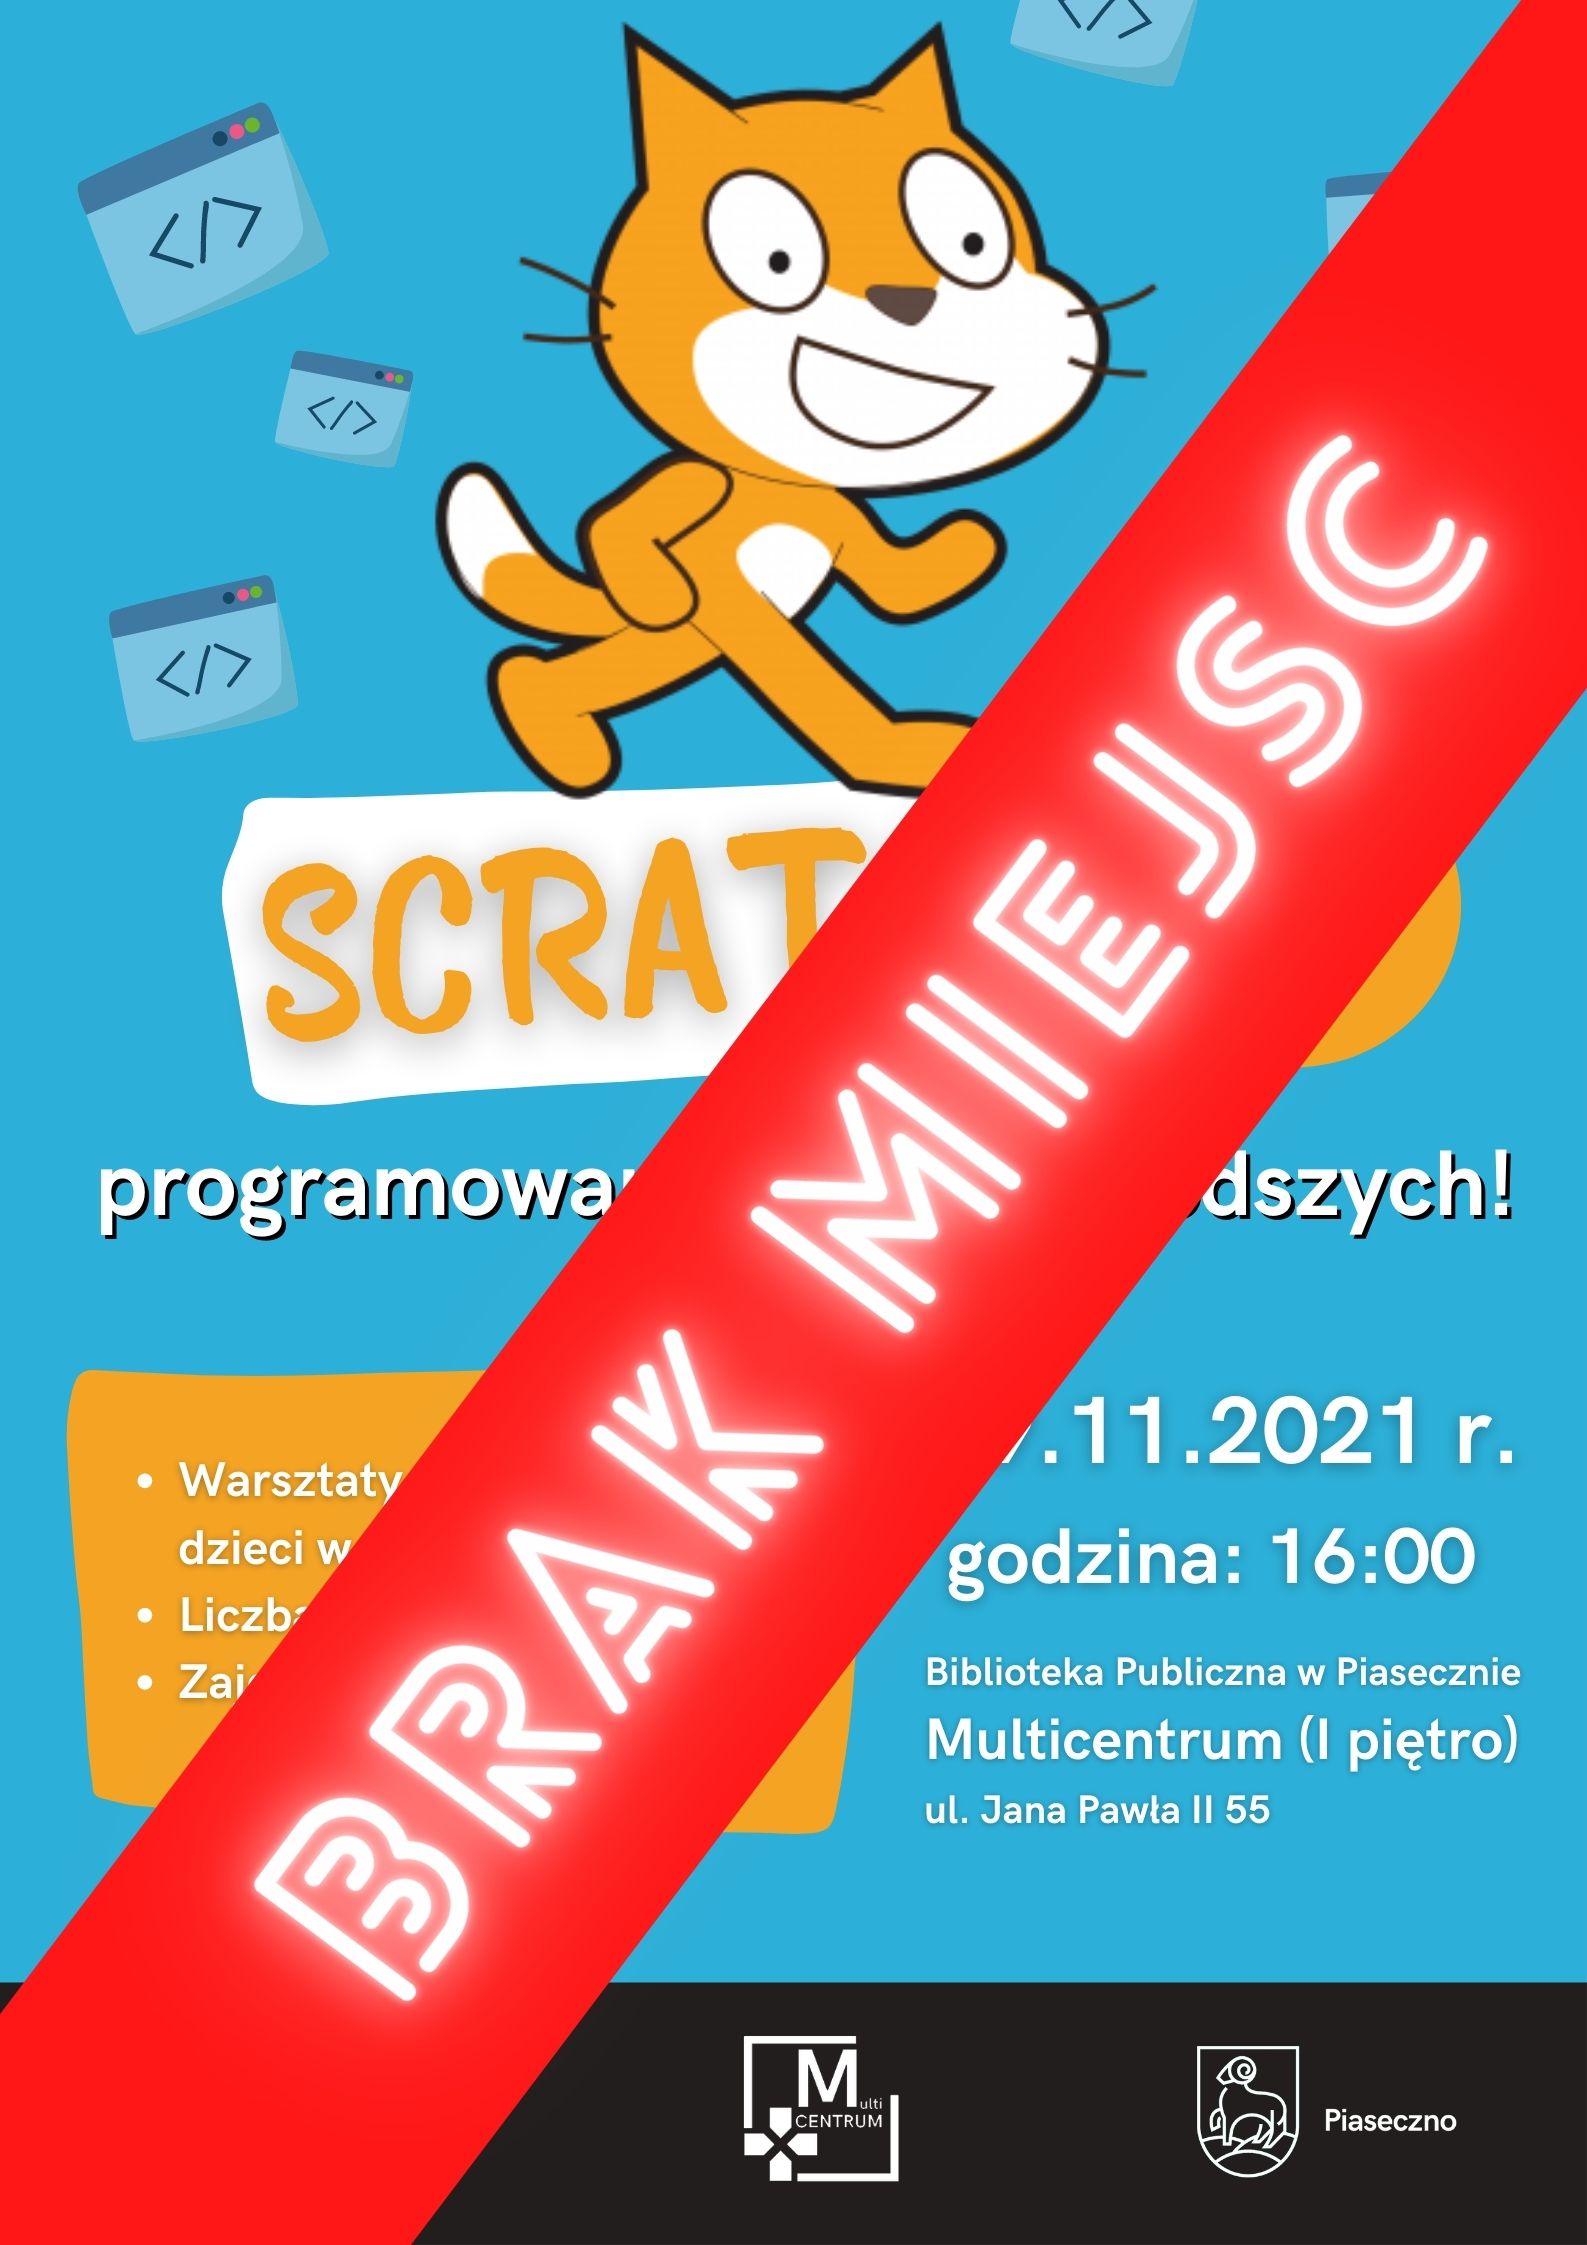 ScratchJr – programowanie dla najmłodszych